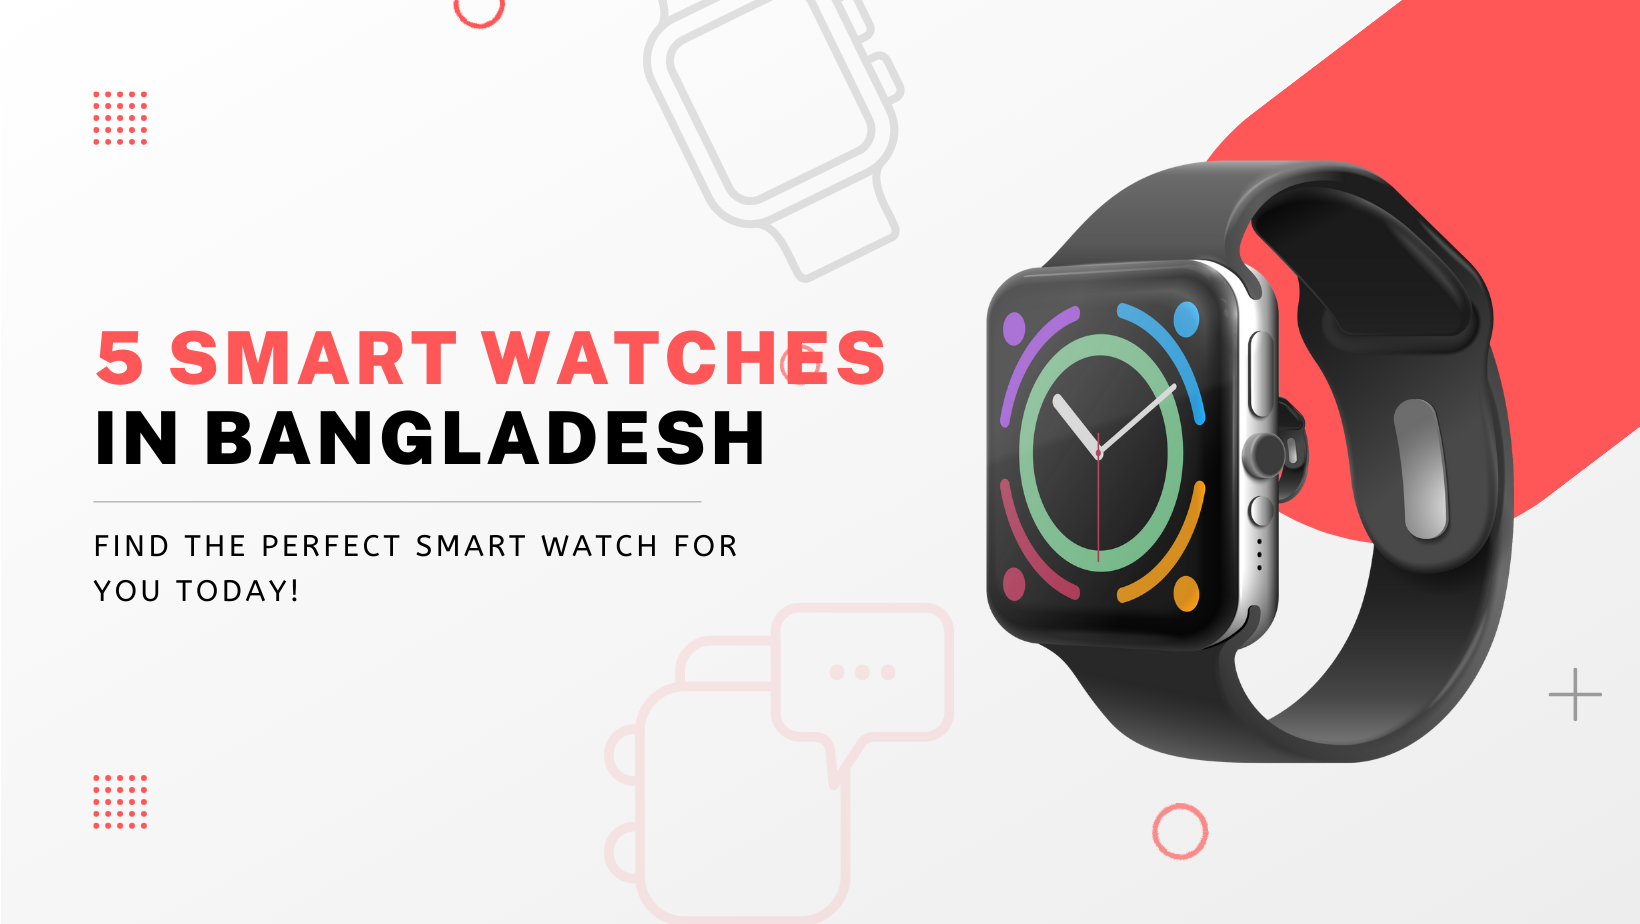 5 Smart Watches in Bangladesh Under 2000 Taka